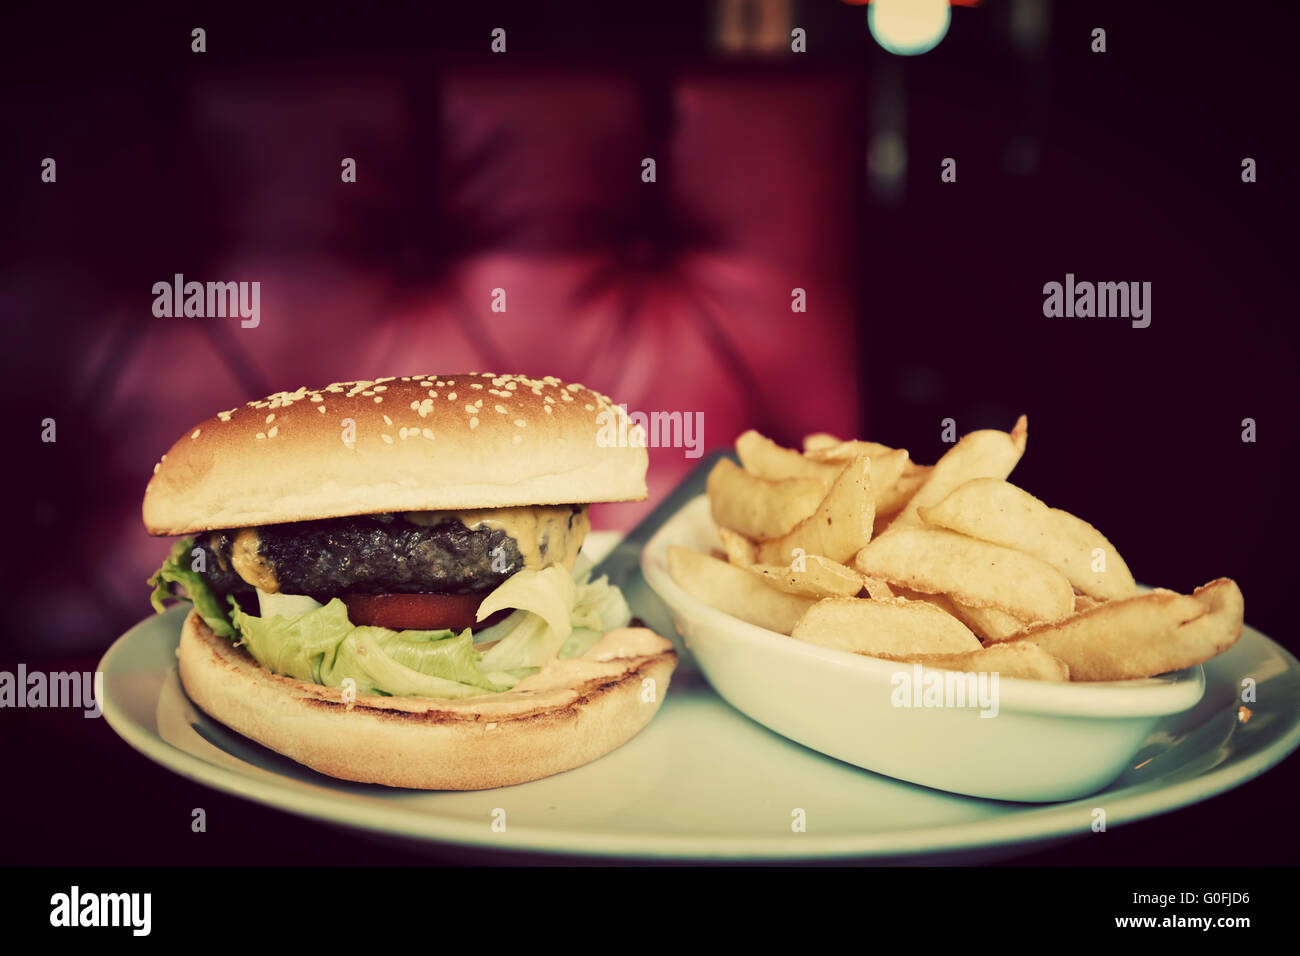 Délicieux hamburger et frites sur plaque dans american food restaurant. Canapé en cuir rouge à l'arrière-plan. Vintage Banque D'Images